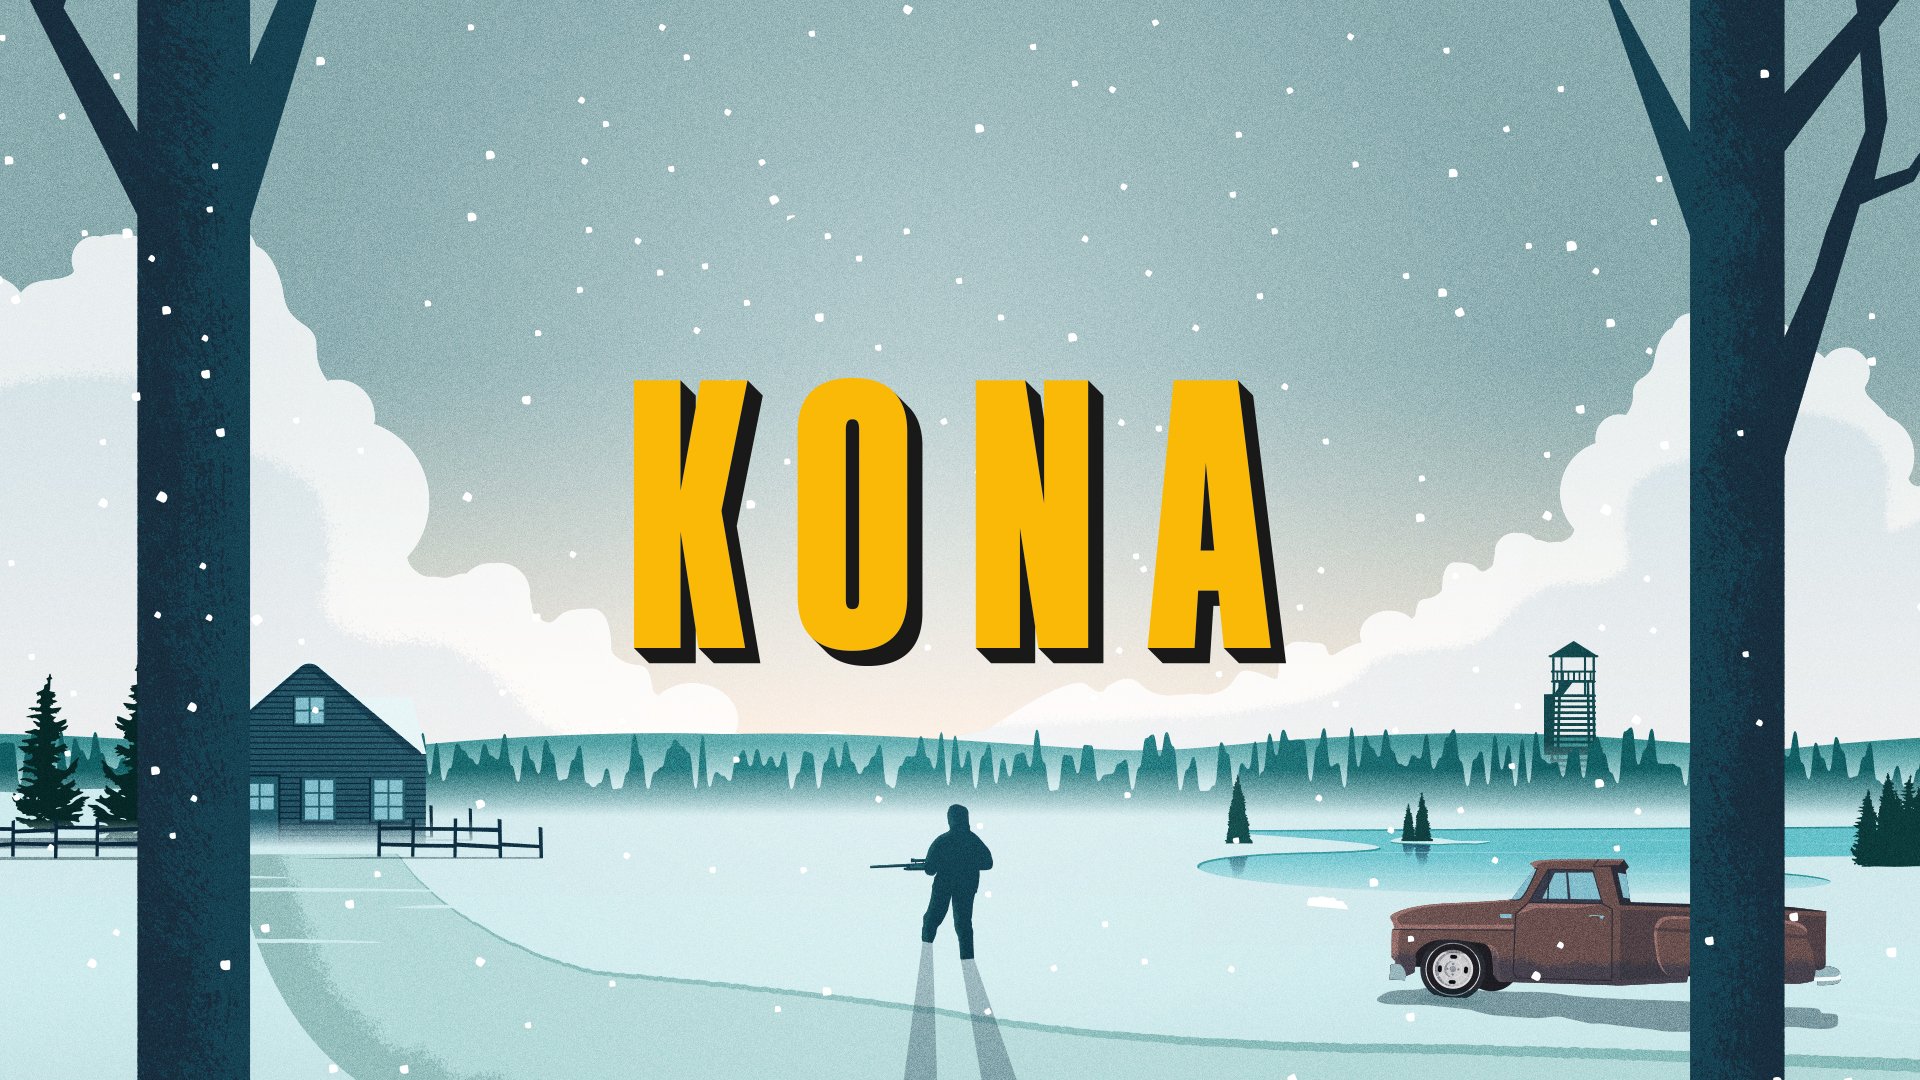 La suite de Kona, une histoire policière sur une brume mystérieuse, a été annoncée